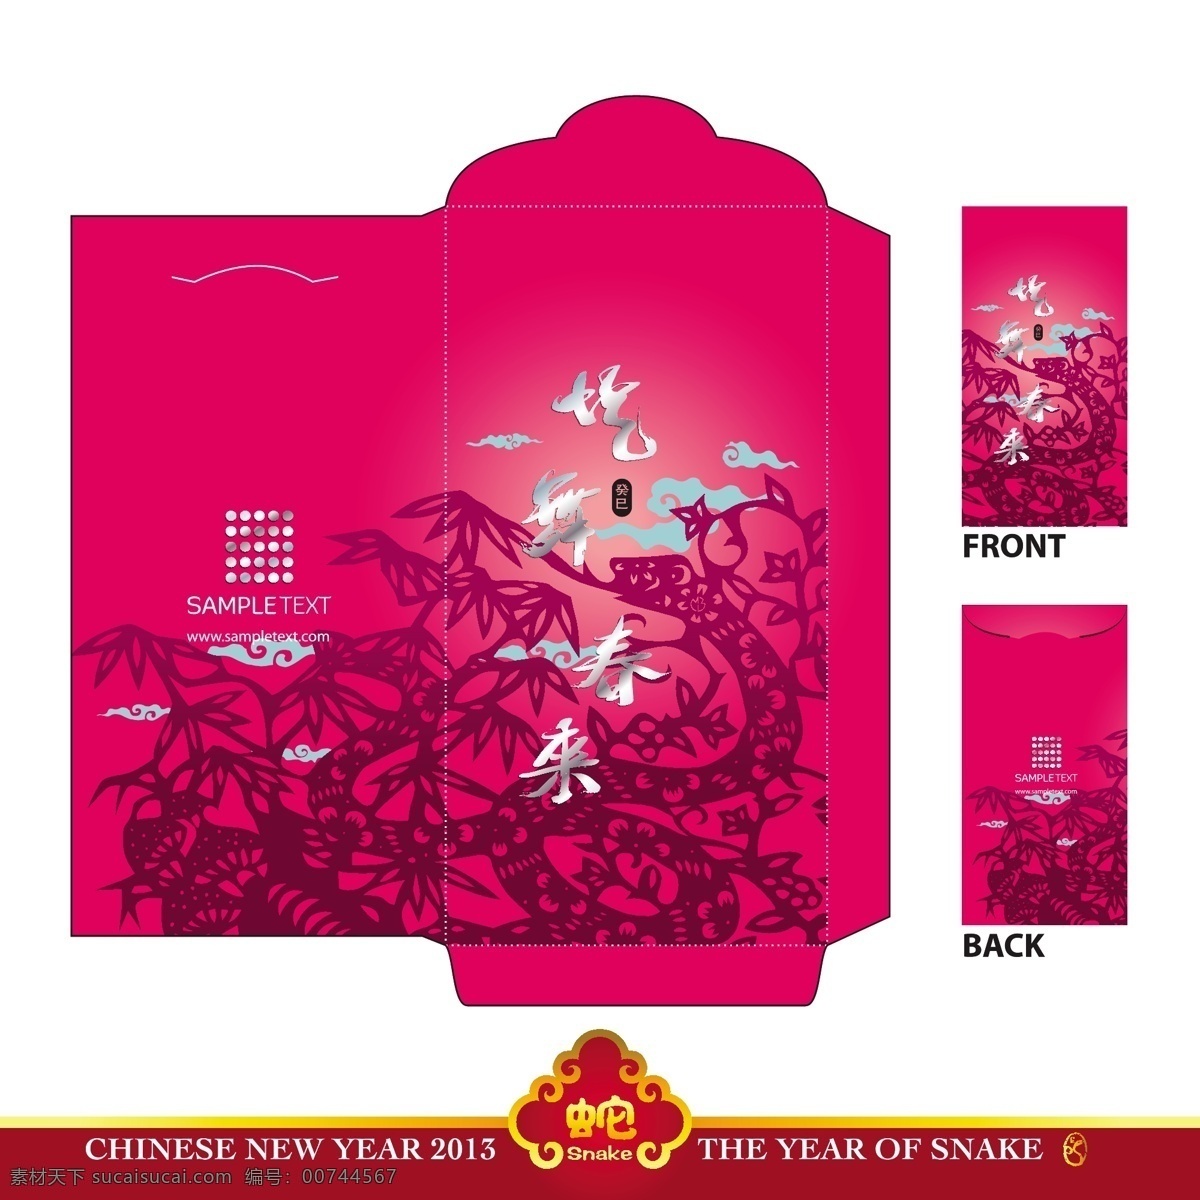 中国 新年 红包 蛇 翻译 模切 年 跳舞 庆祝新的一年 矢量图 日常生活